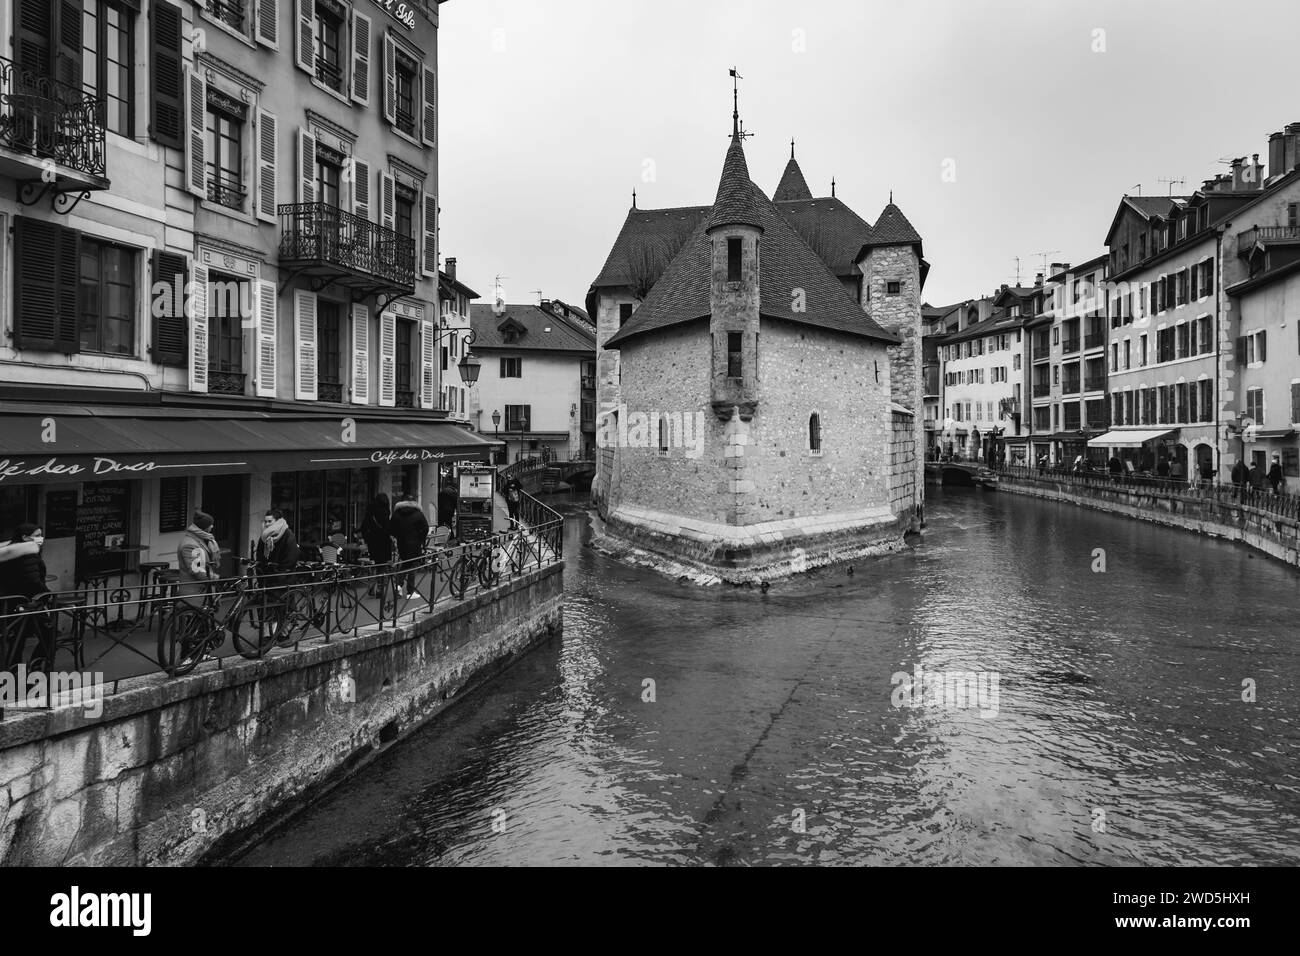 Annecy, Francia - 29 de enero de 2022: Vista panorámica de los hermosos canales y edificios históricos en el casco antiguo de Annecy, Ródano-Alpes, Francia. Foto de stock